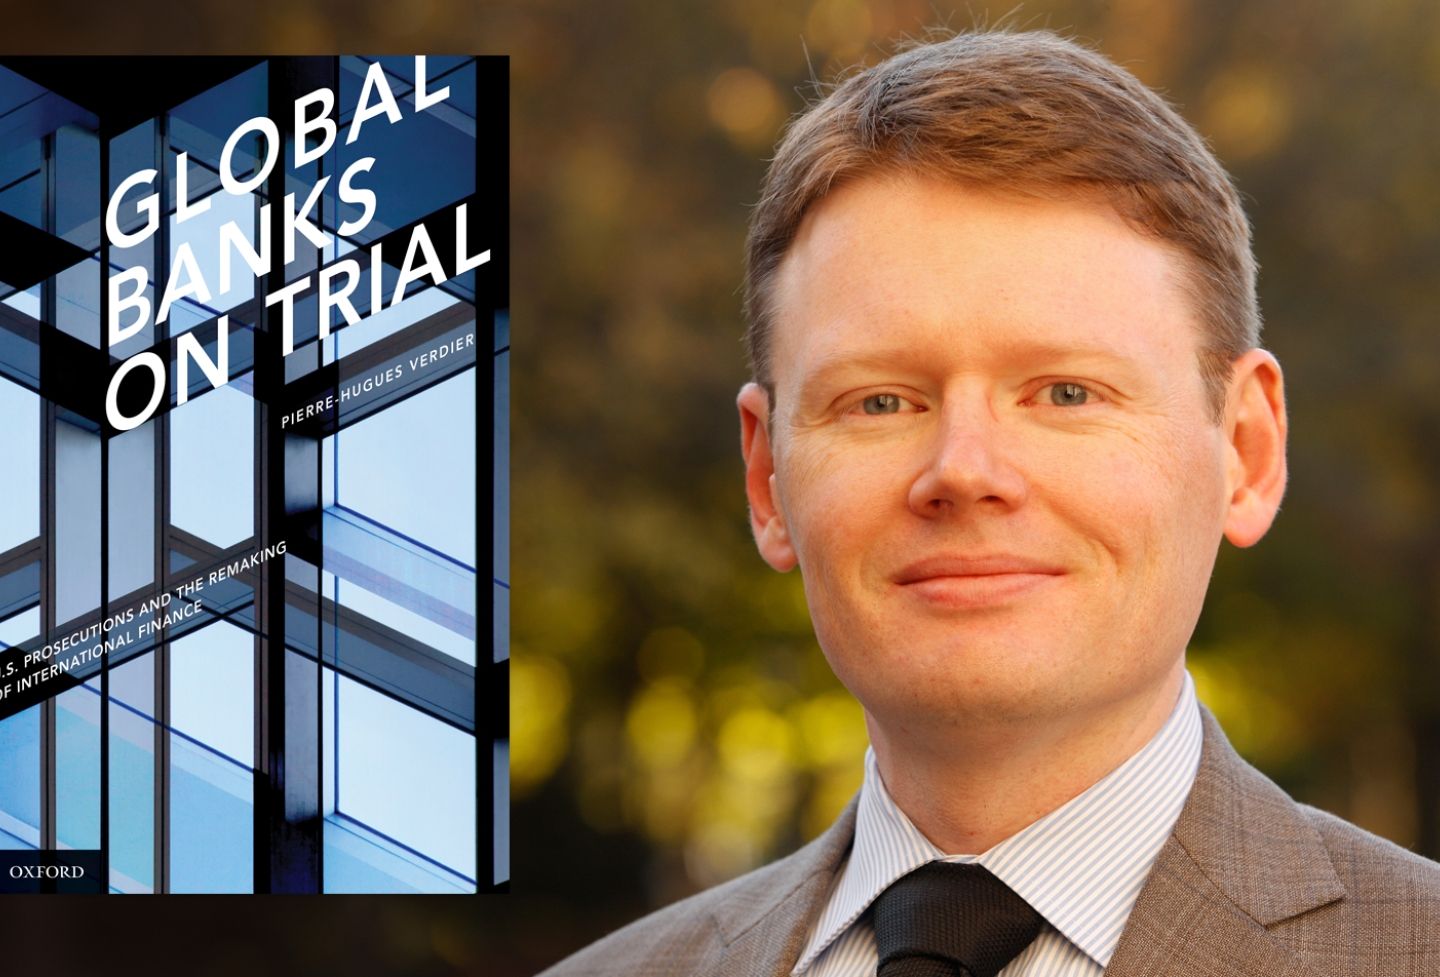 “Global Banks on Trial” and Pierre-Hugues Verdier 